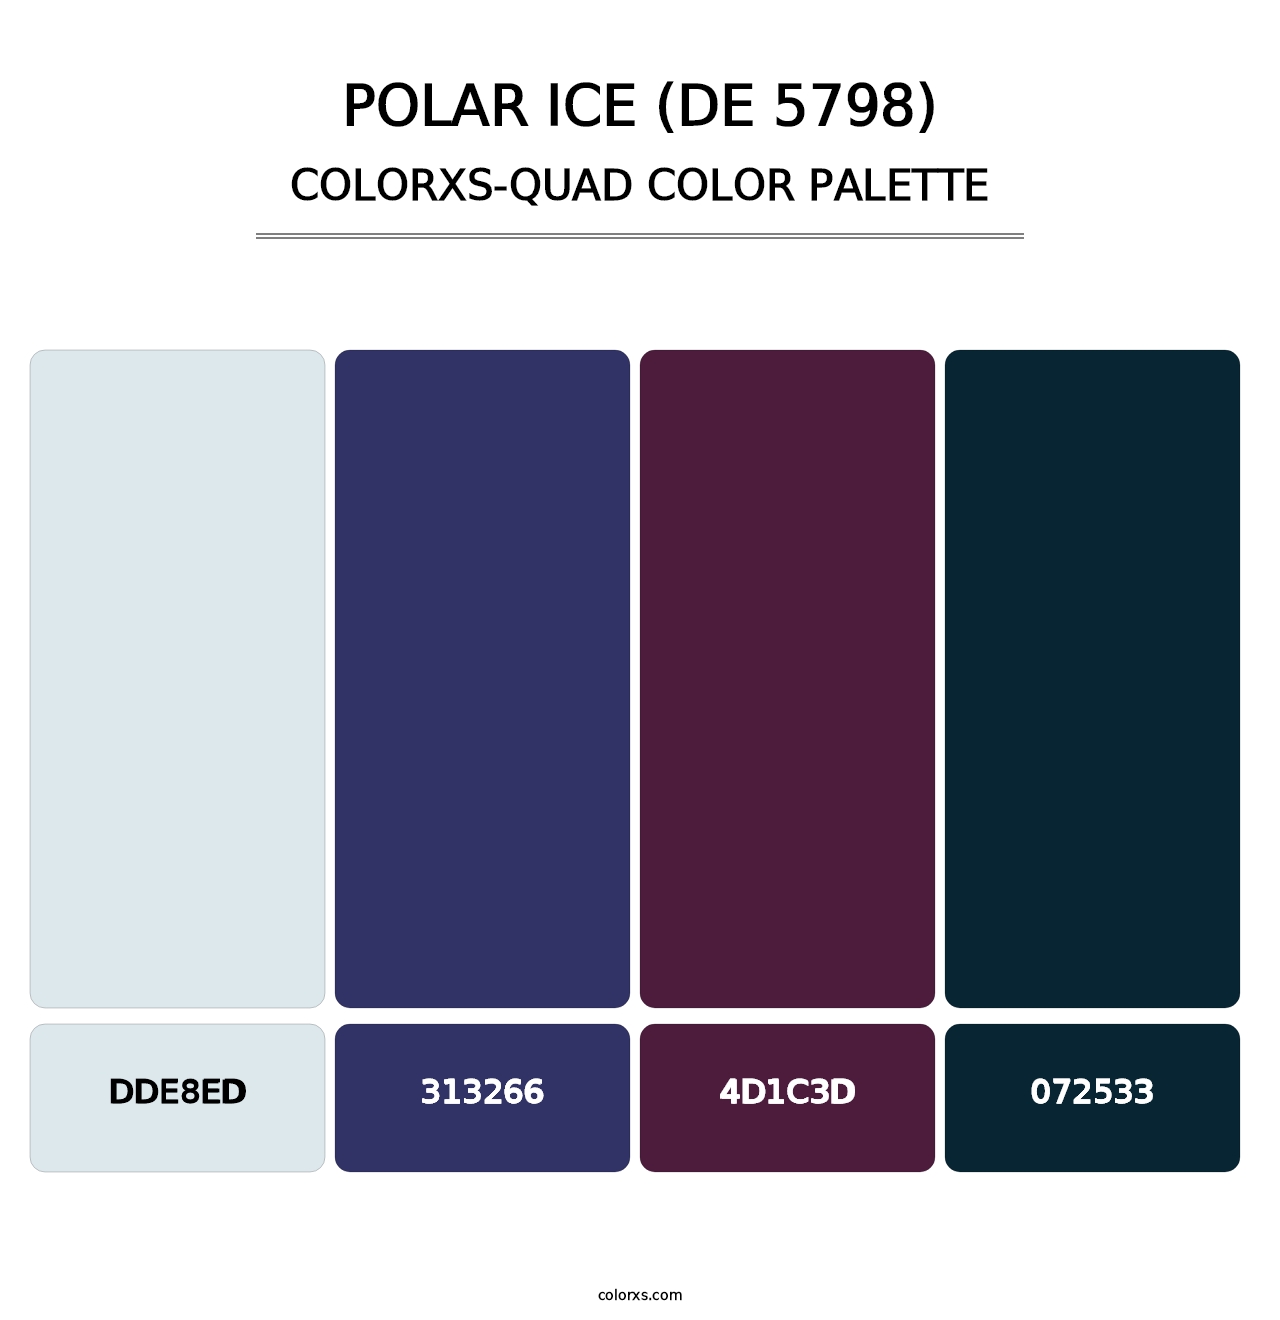 Polar Ice (DE 5798) - Colorxs Quad Palette